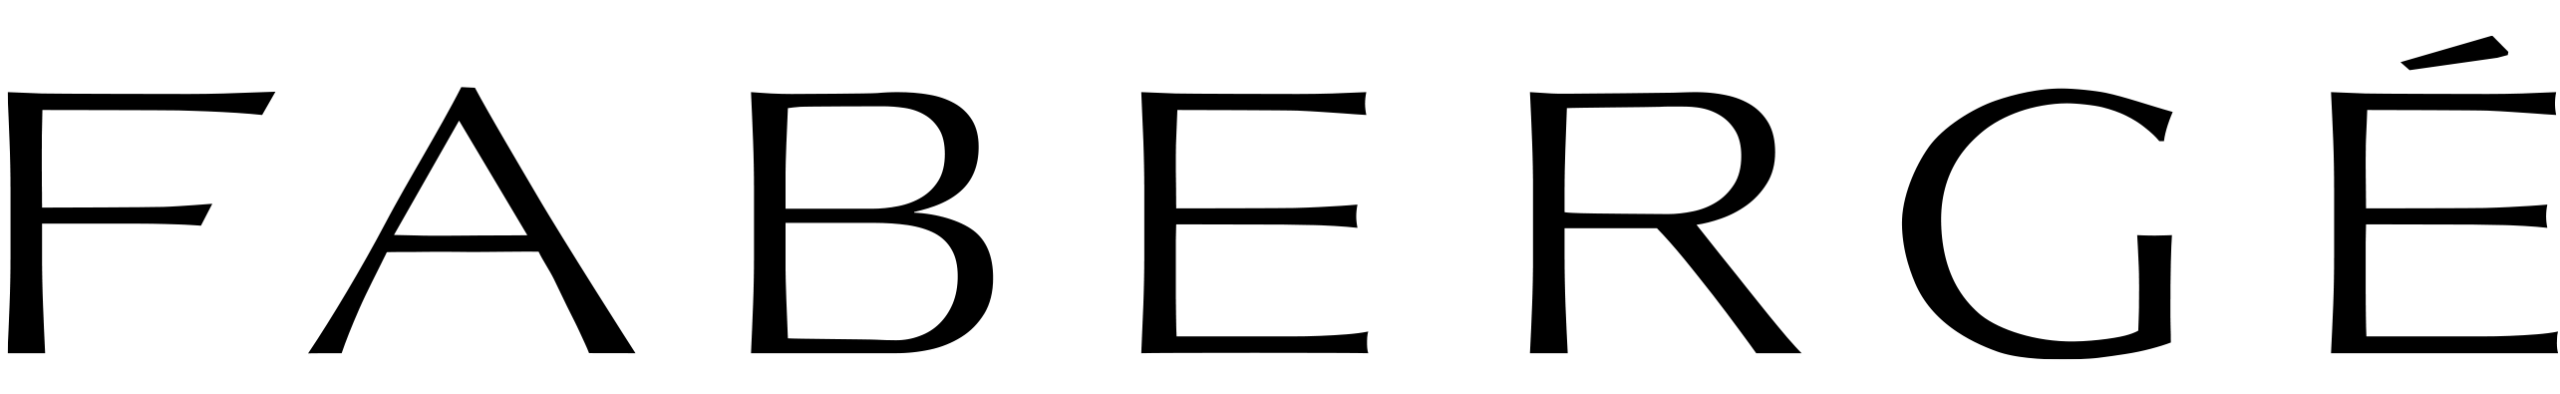 Faberge Logo